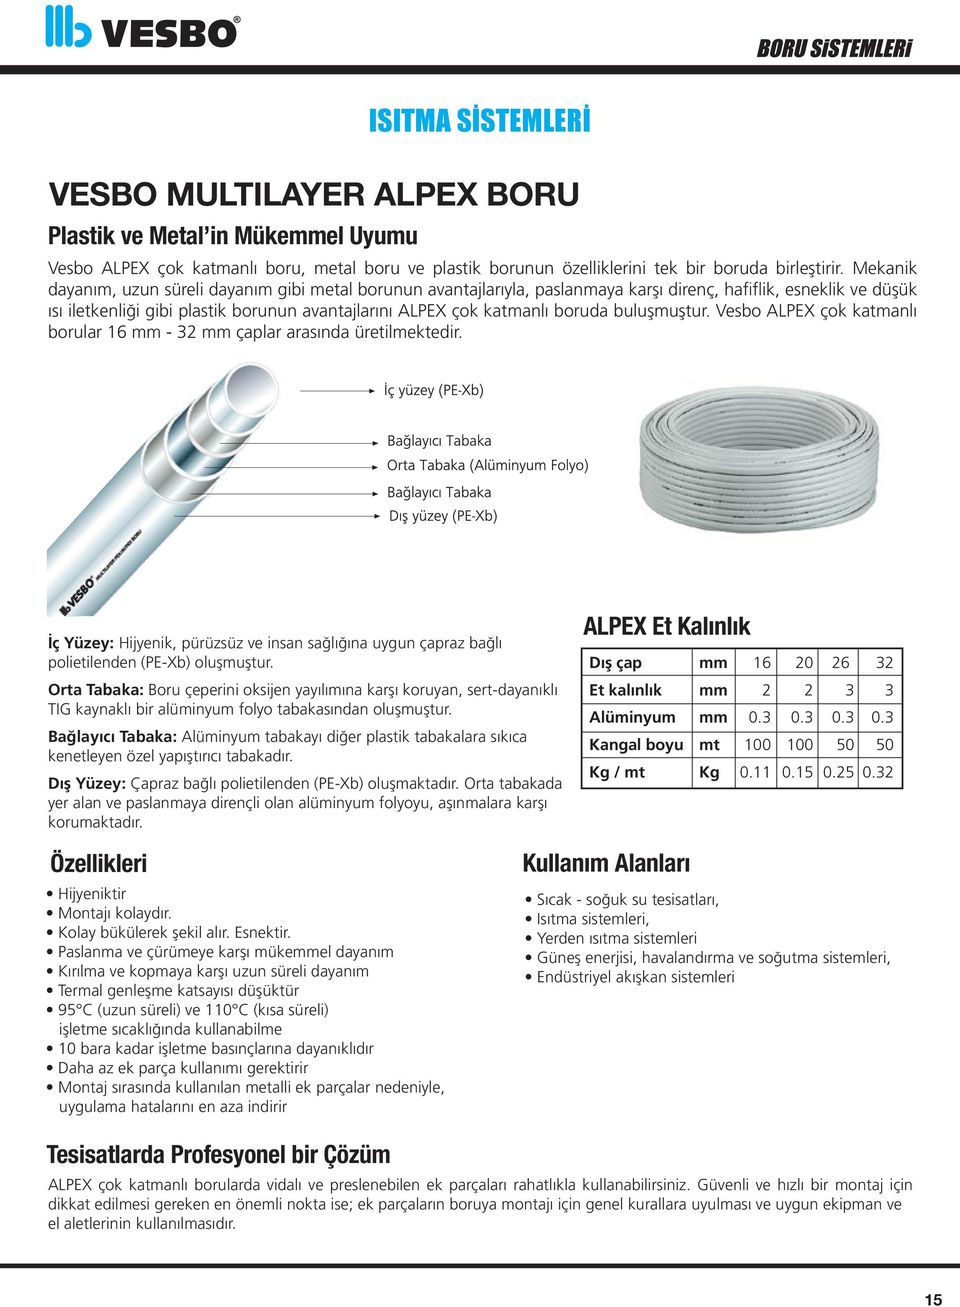 boruda buluşmuştur. Vesbo ALPEX çok katmanlı borular 16 mm - 32 mm çaplar arasında üretilmektedir. İç Yüzey: Hijyenik, pürüzsüz ve insan sağlığına uygun çapraz bağlı polietilenden (PE-Xb) oluşmuştur.